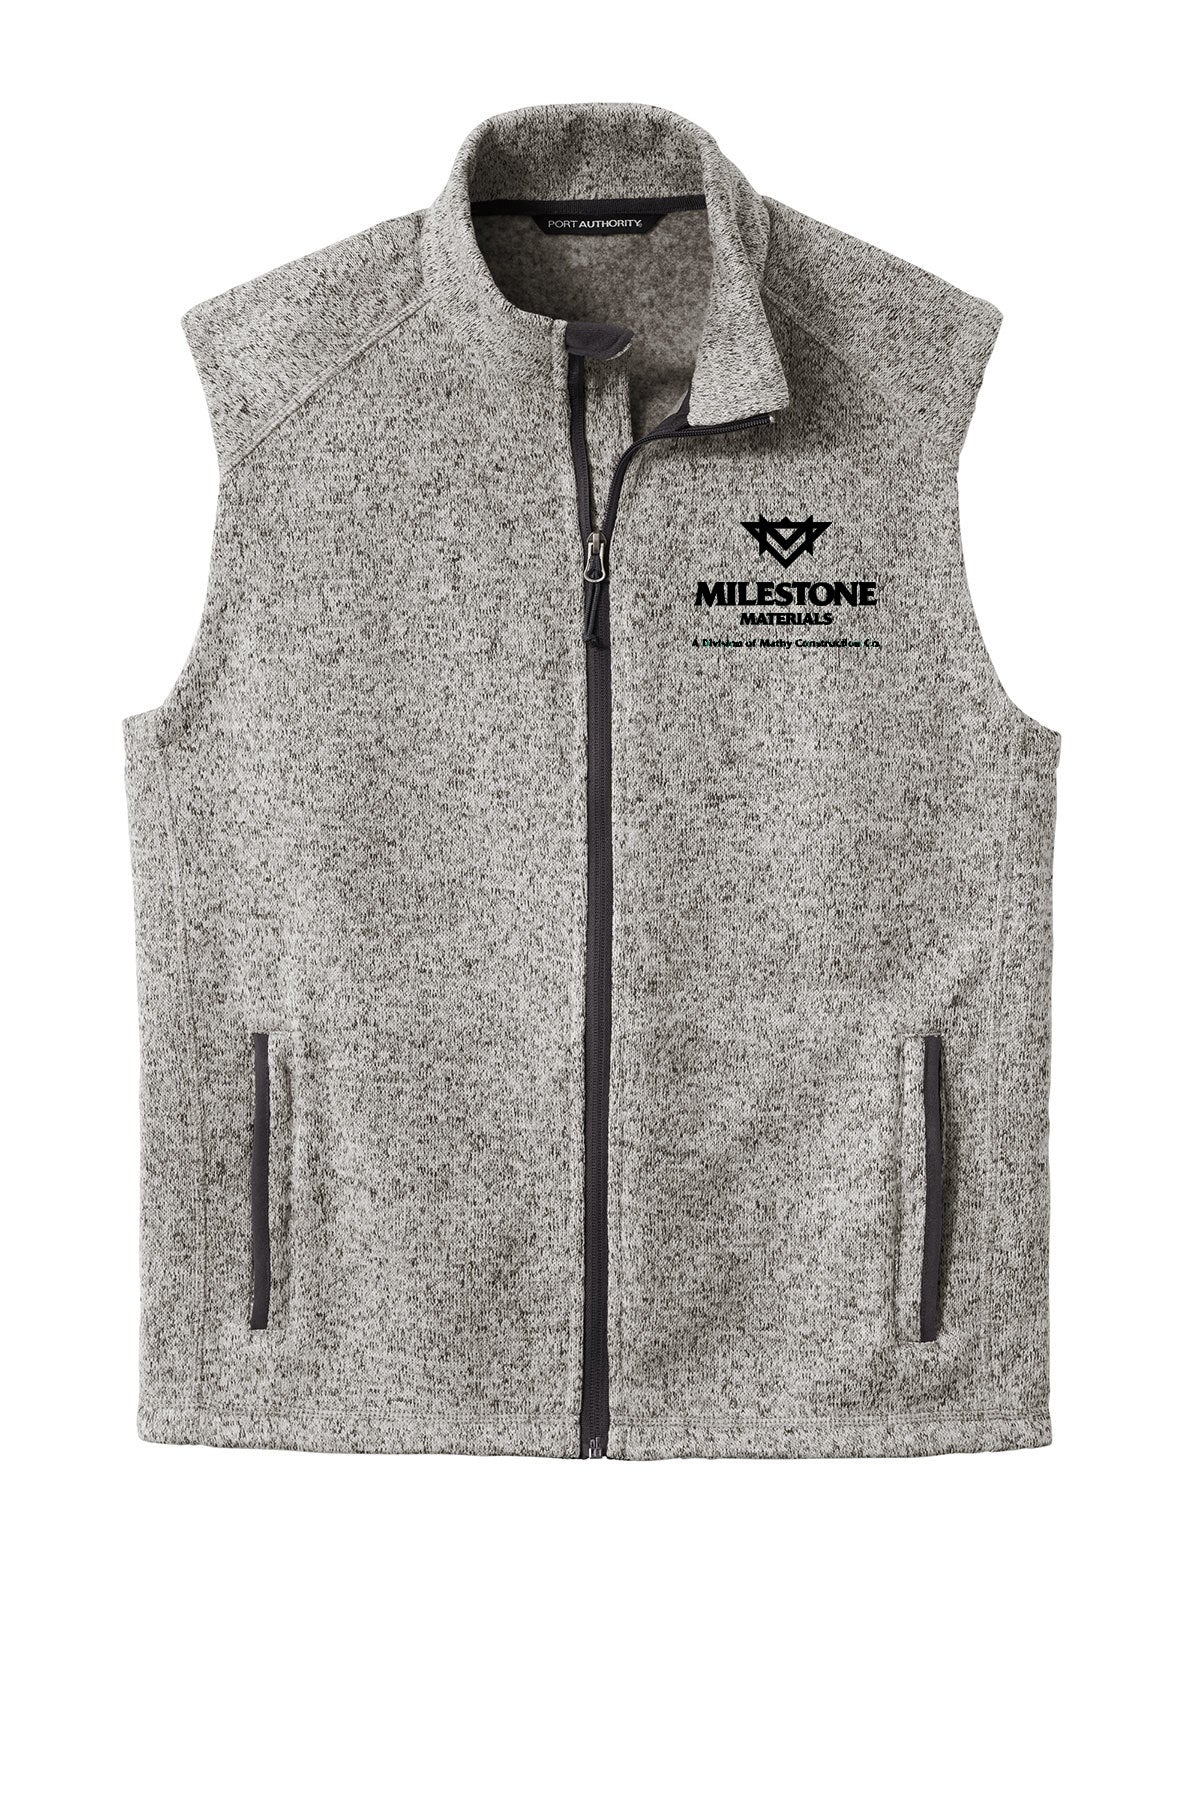 Milestone Materials Sweater Fleece Vest